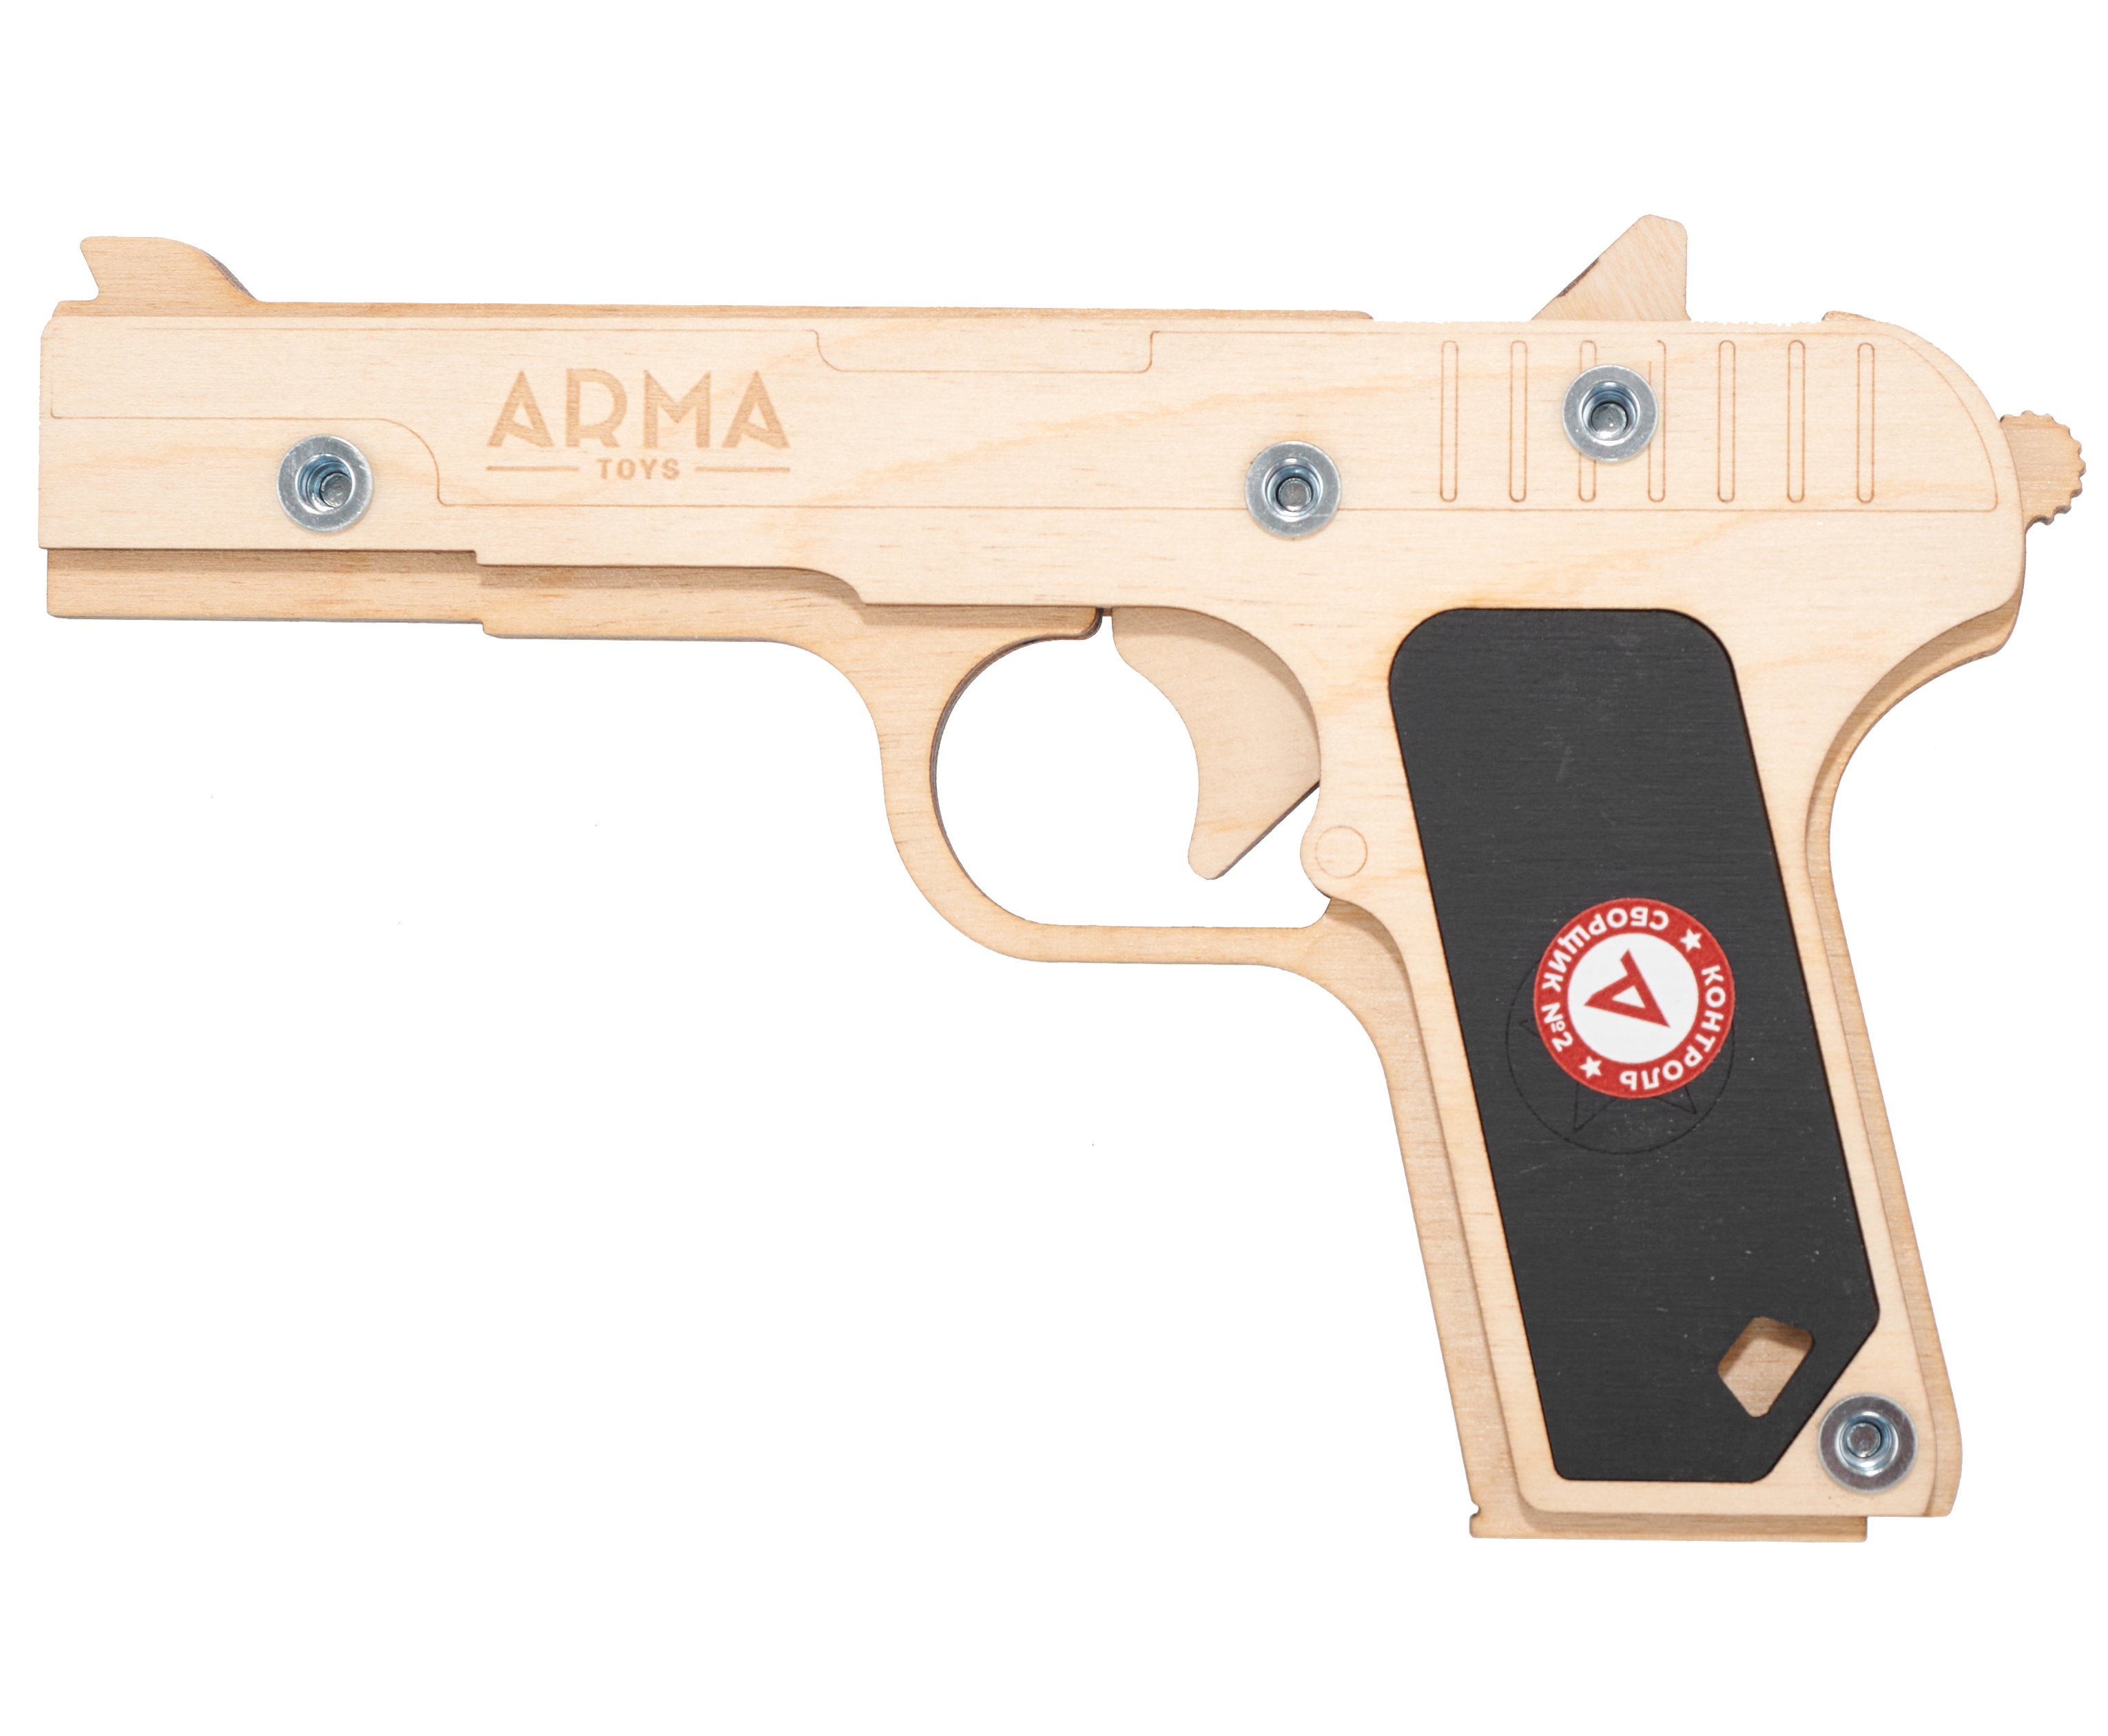 Резинкострел игрушечный Arma toys пистолет ТТ Компакт макет, Токарев, ATL002 резинкострел игрушечный arma toys пистолет fallout подвижный затвор предохранитель at041